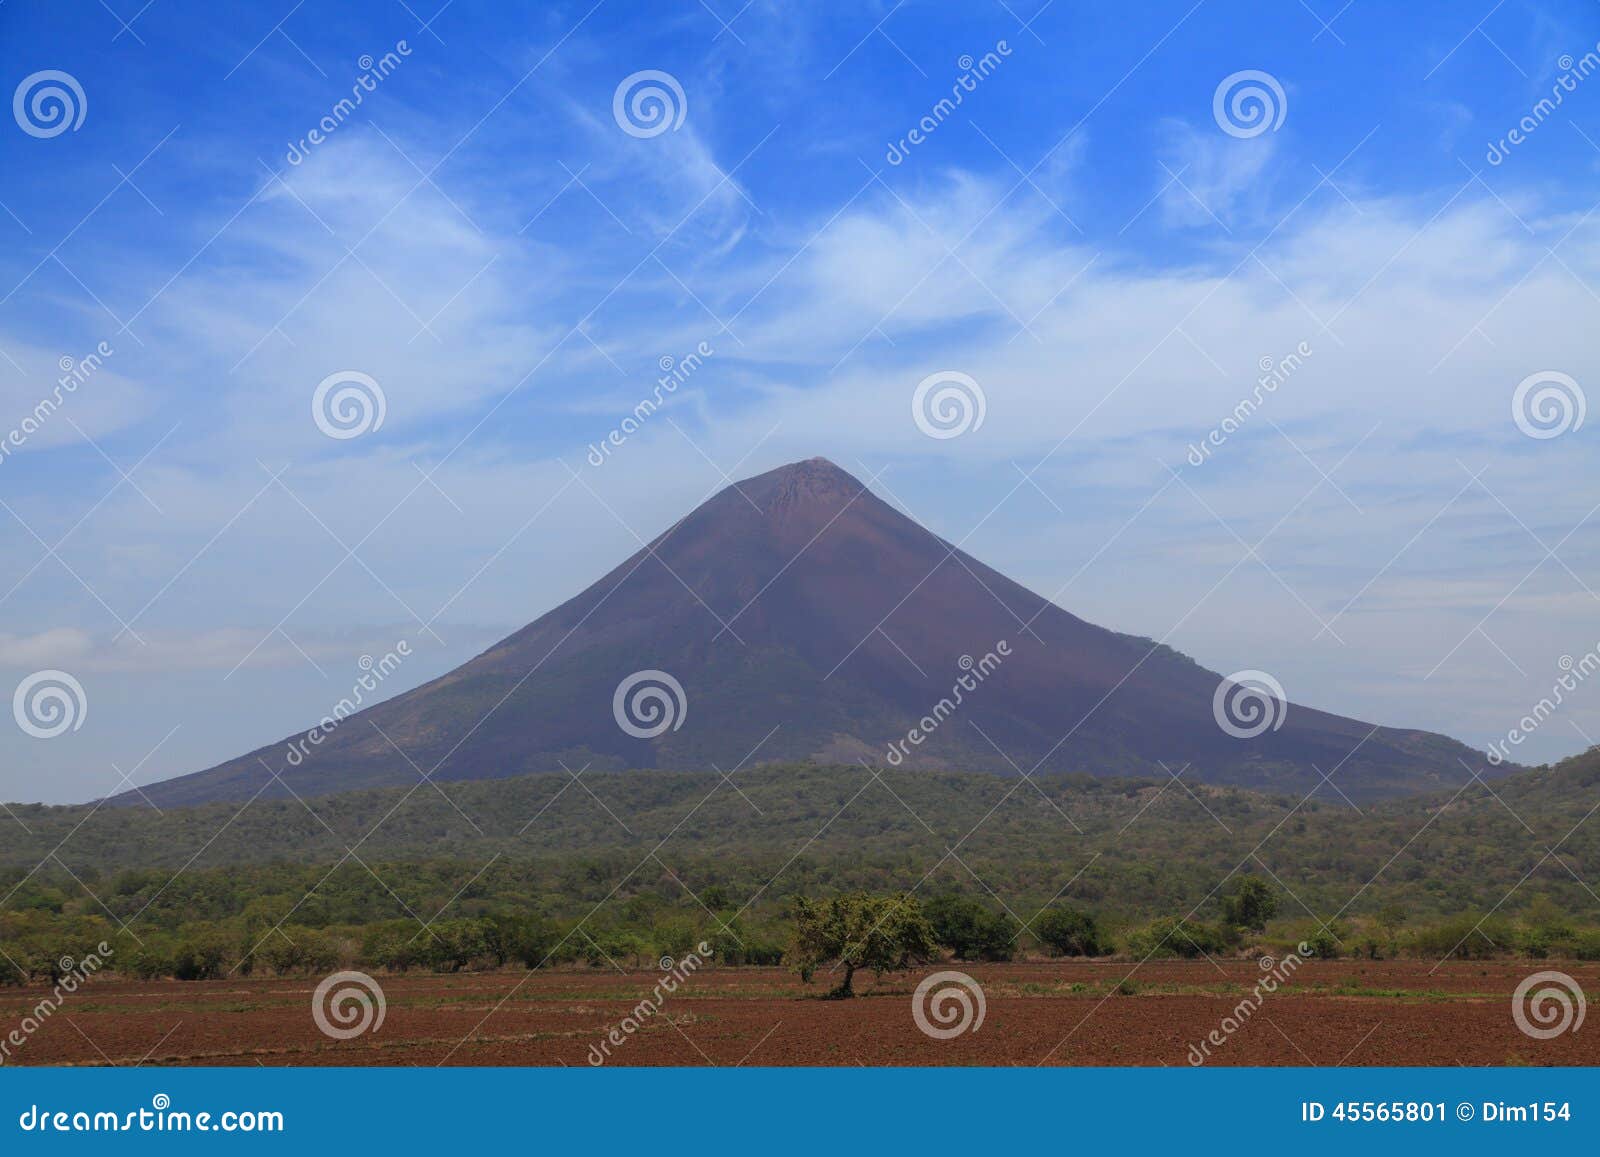 volcano momotombo